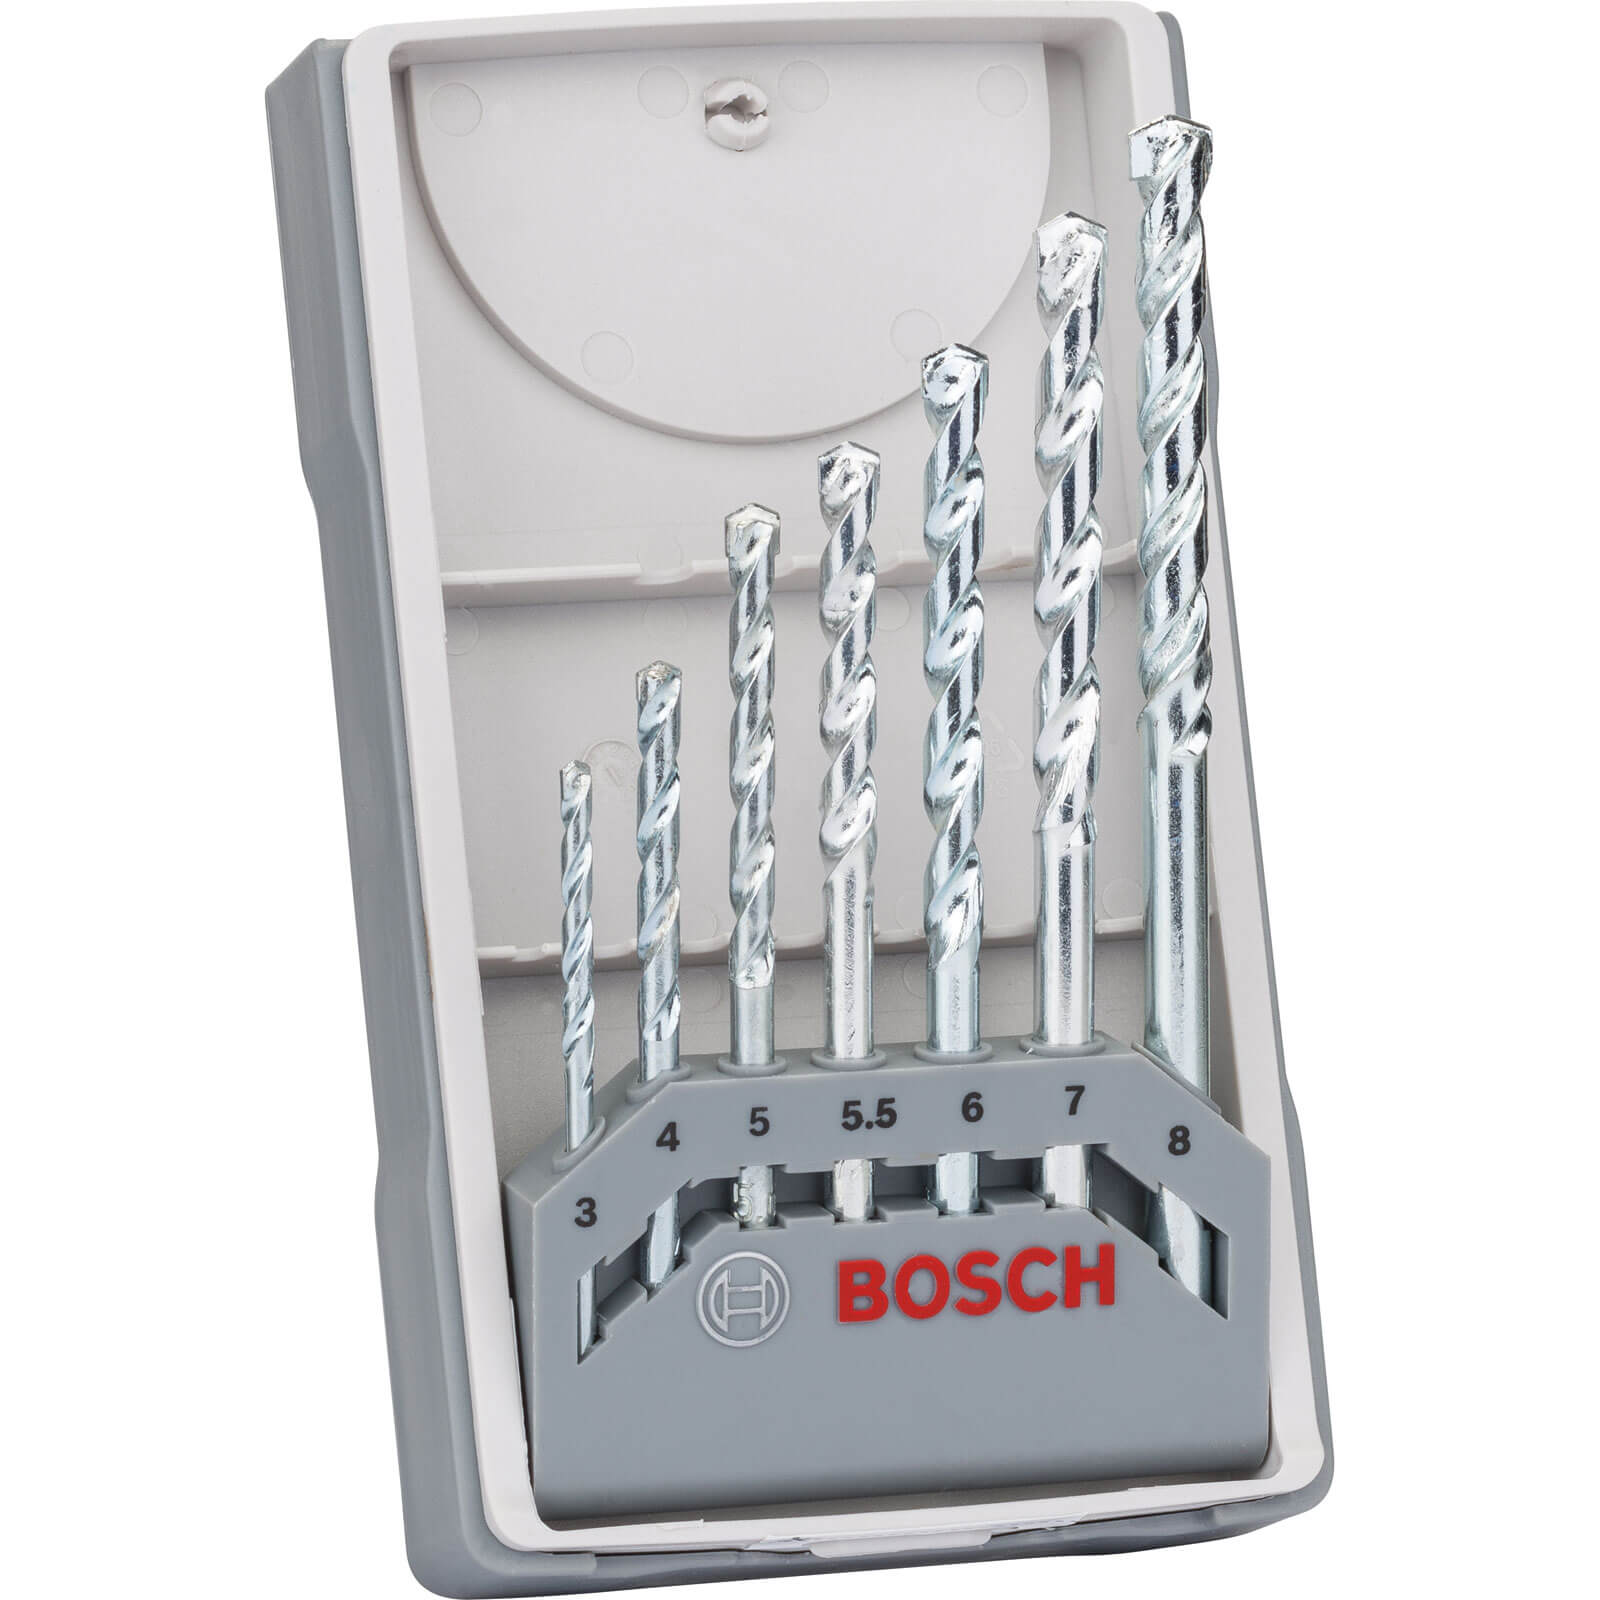 Image of Bosch 7 Piece Impact Masonry Drill Bit Set